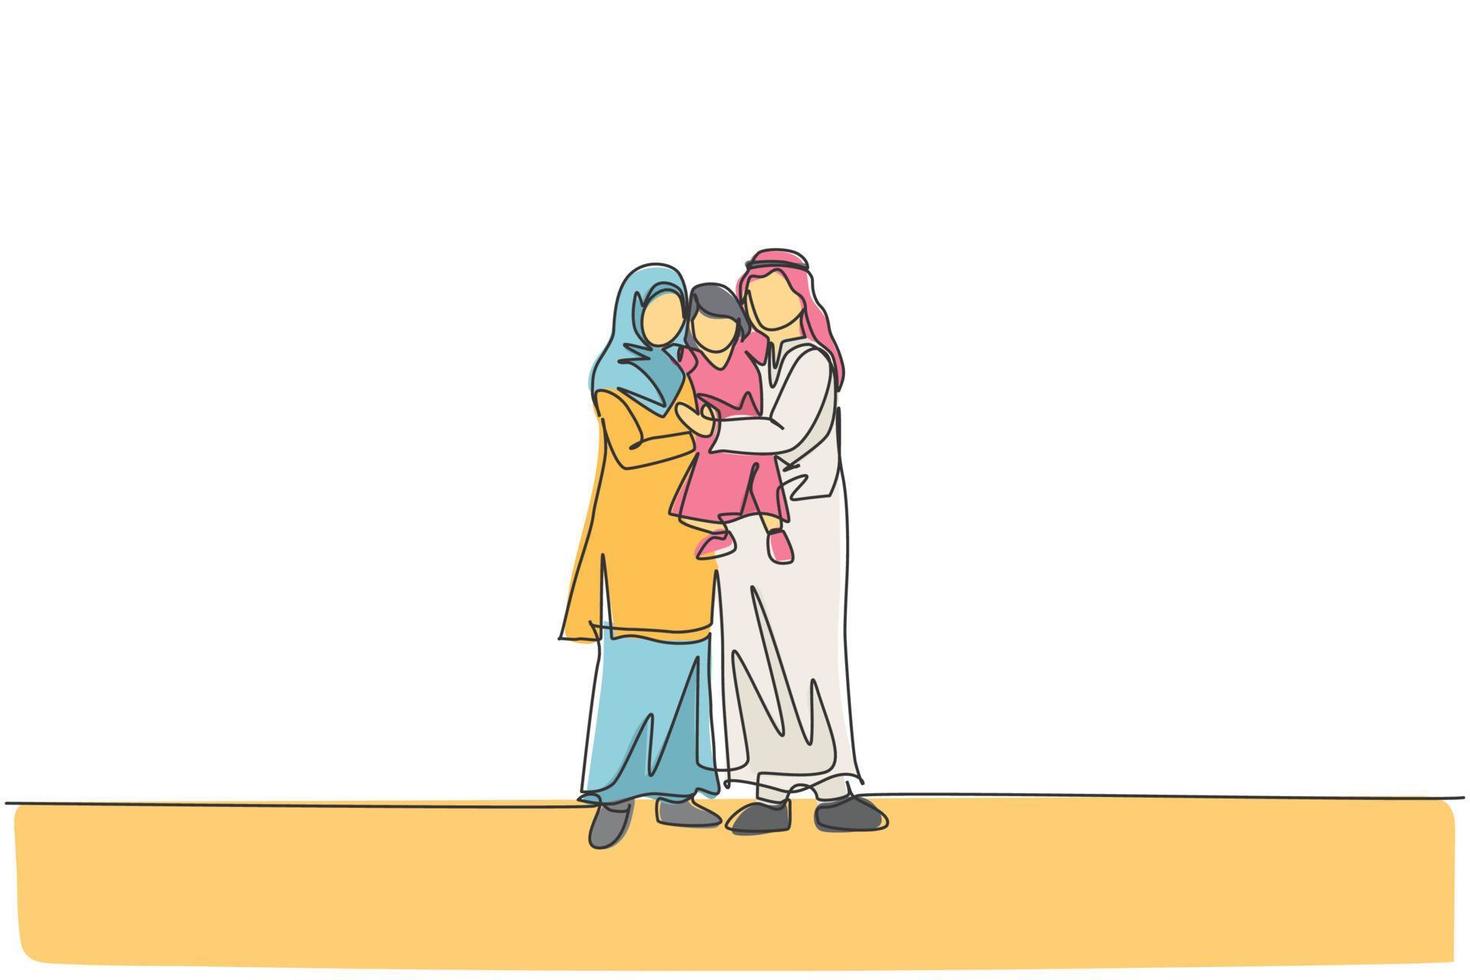 un unico disegno a tratteggio di giovane mamma e papà arabi felici che sollevano e abbracciano insieme la loro ragazza figlia illustrazione vettoriale. concetto di genitorialità famiglia felice musulmana. disegno di disegno a linea continua vettore